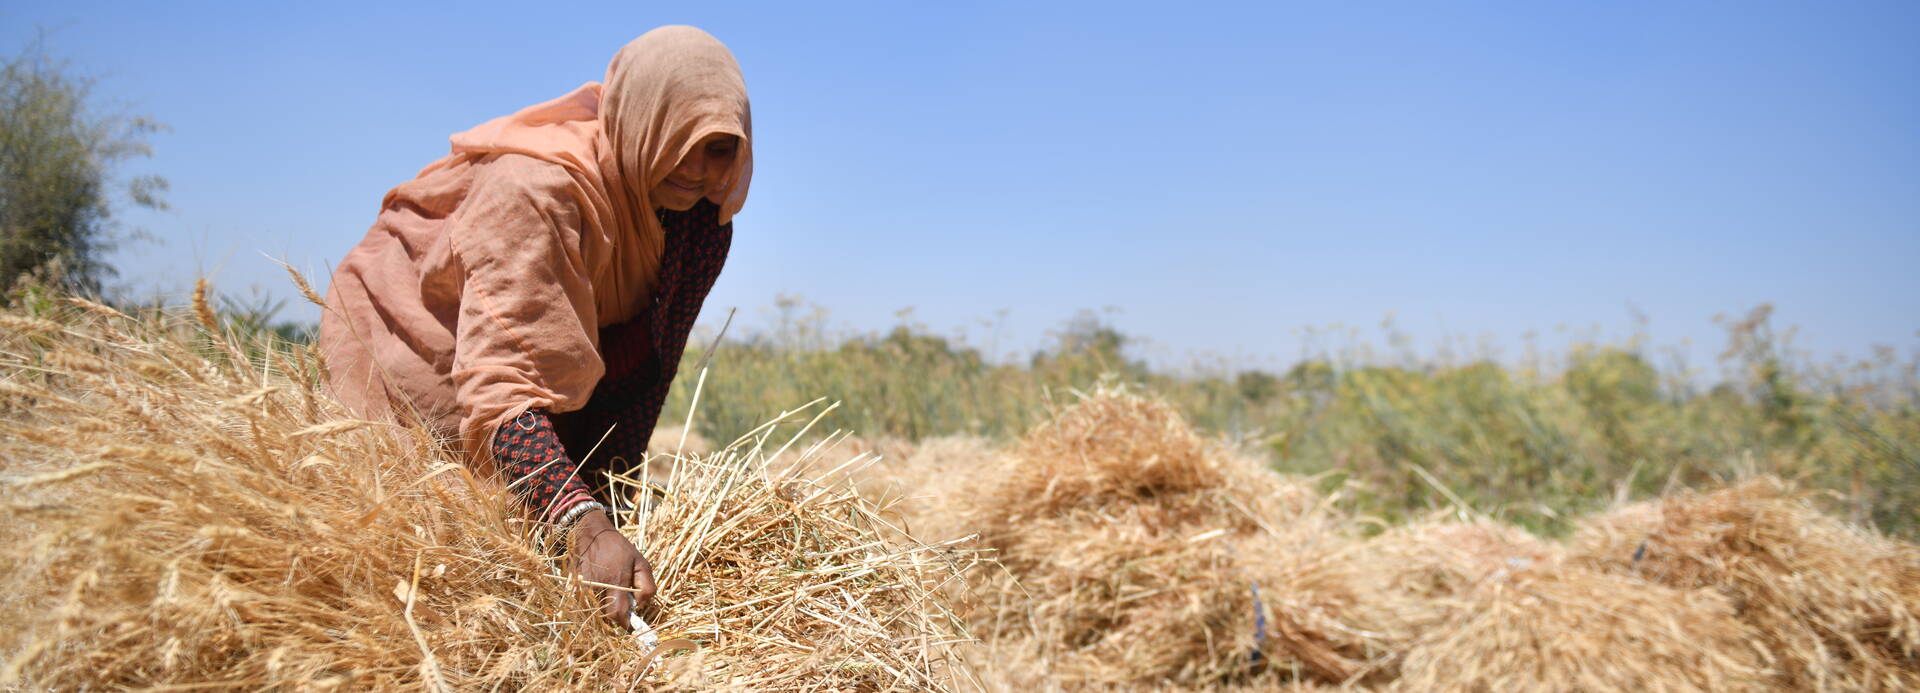 Eine Frau aus Indien sammelt Weizen ein